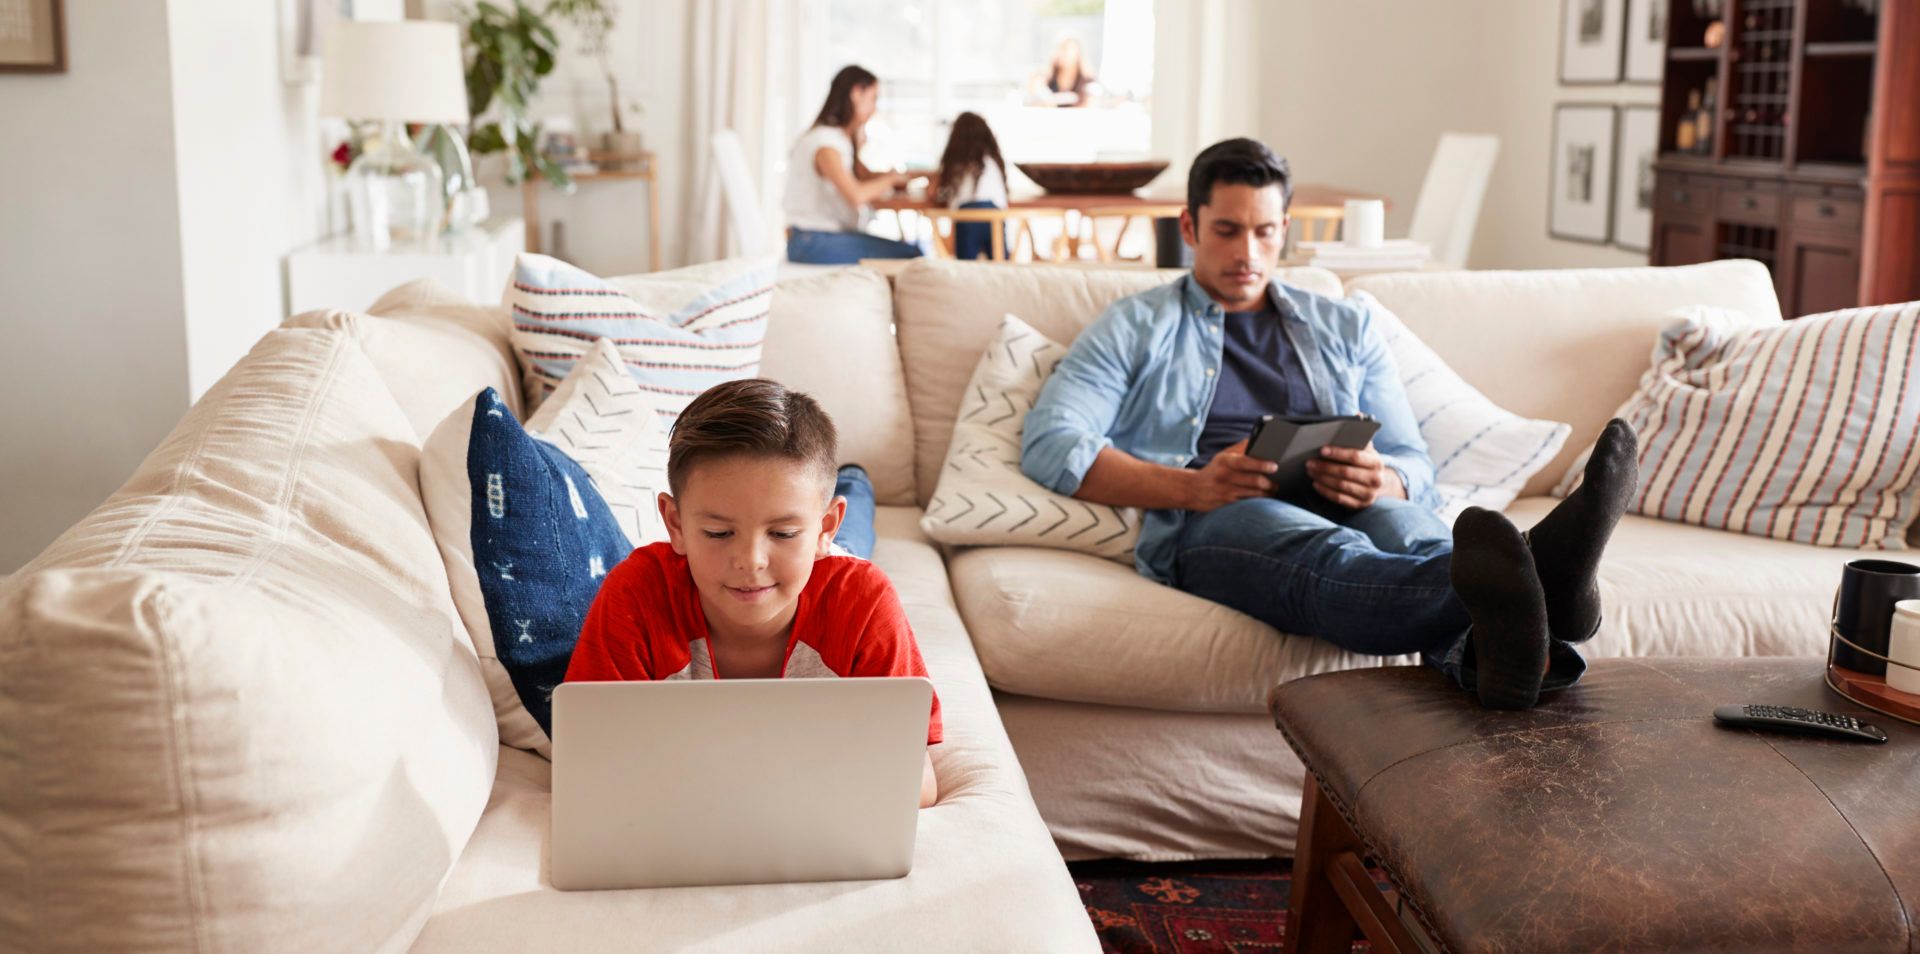 Enfant qui utilise un ordinateur portable sur un canapé pendant qu’une personne adulte regarde une tablette.